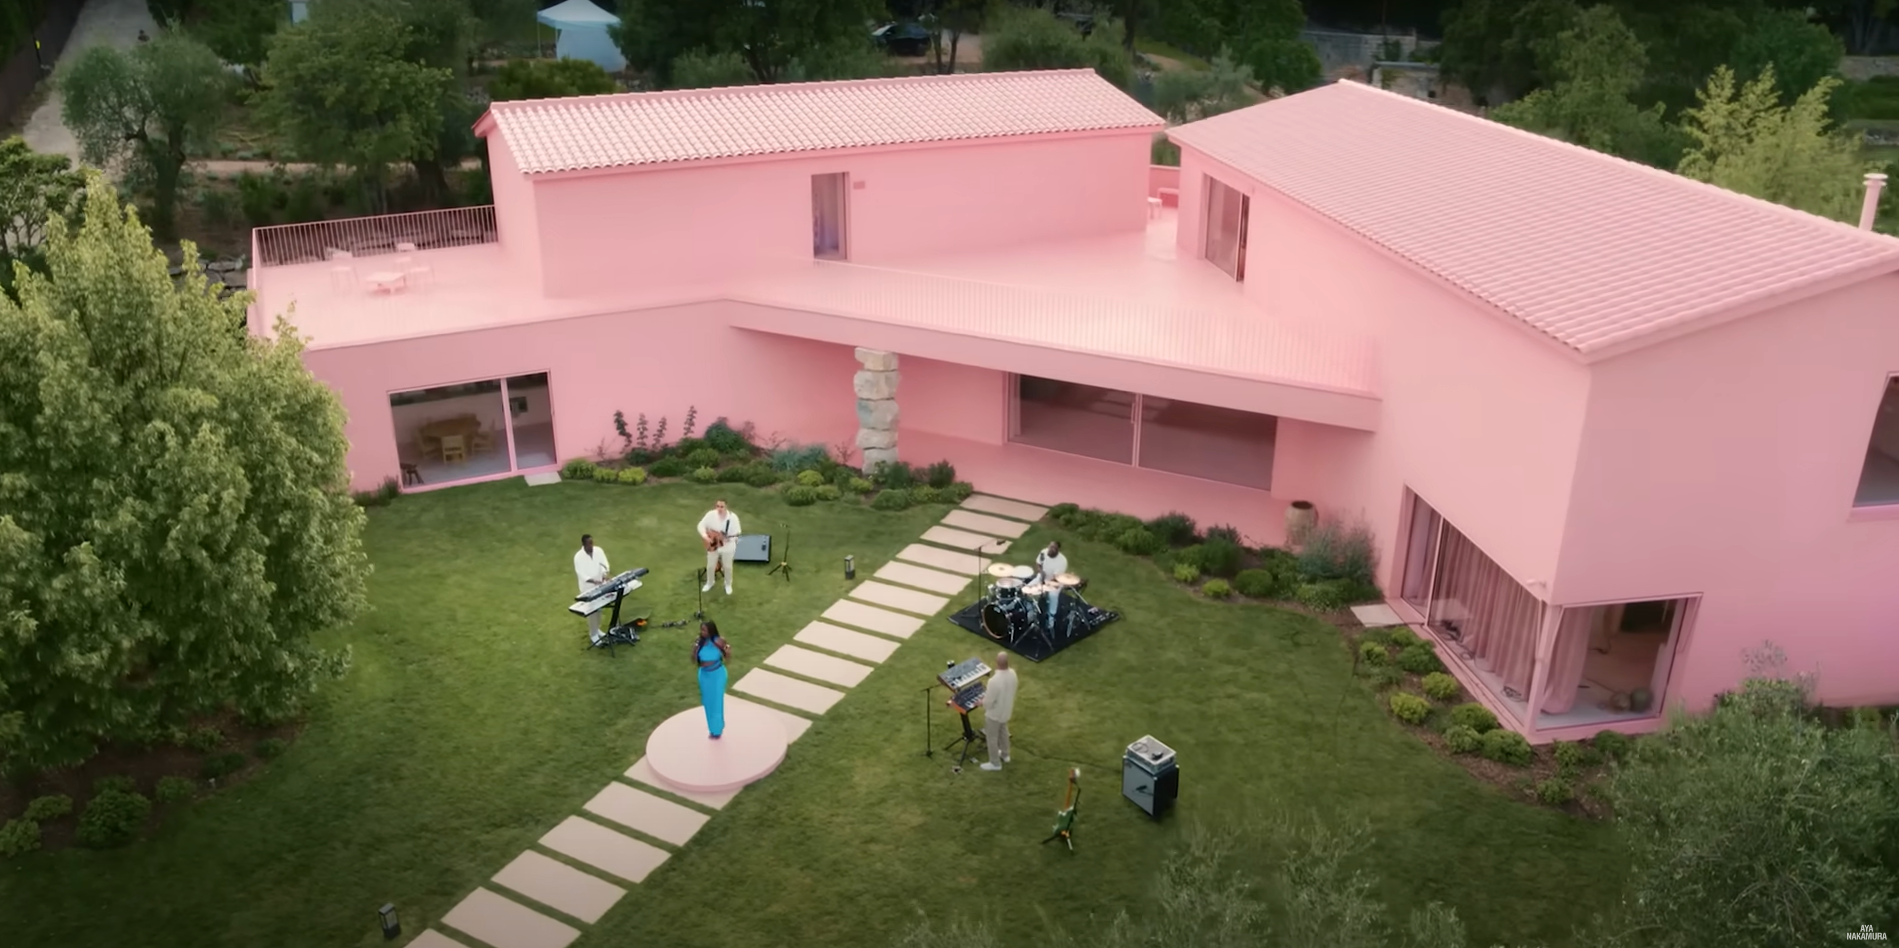 quand aya nakamura s'emparait d'une maison d'architecte rose en provence